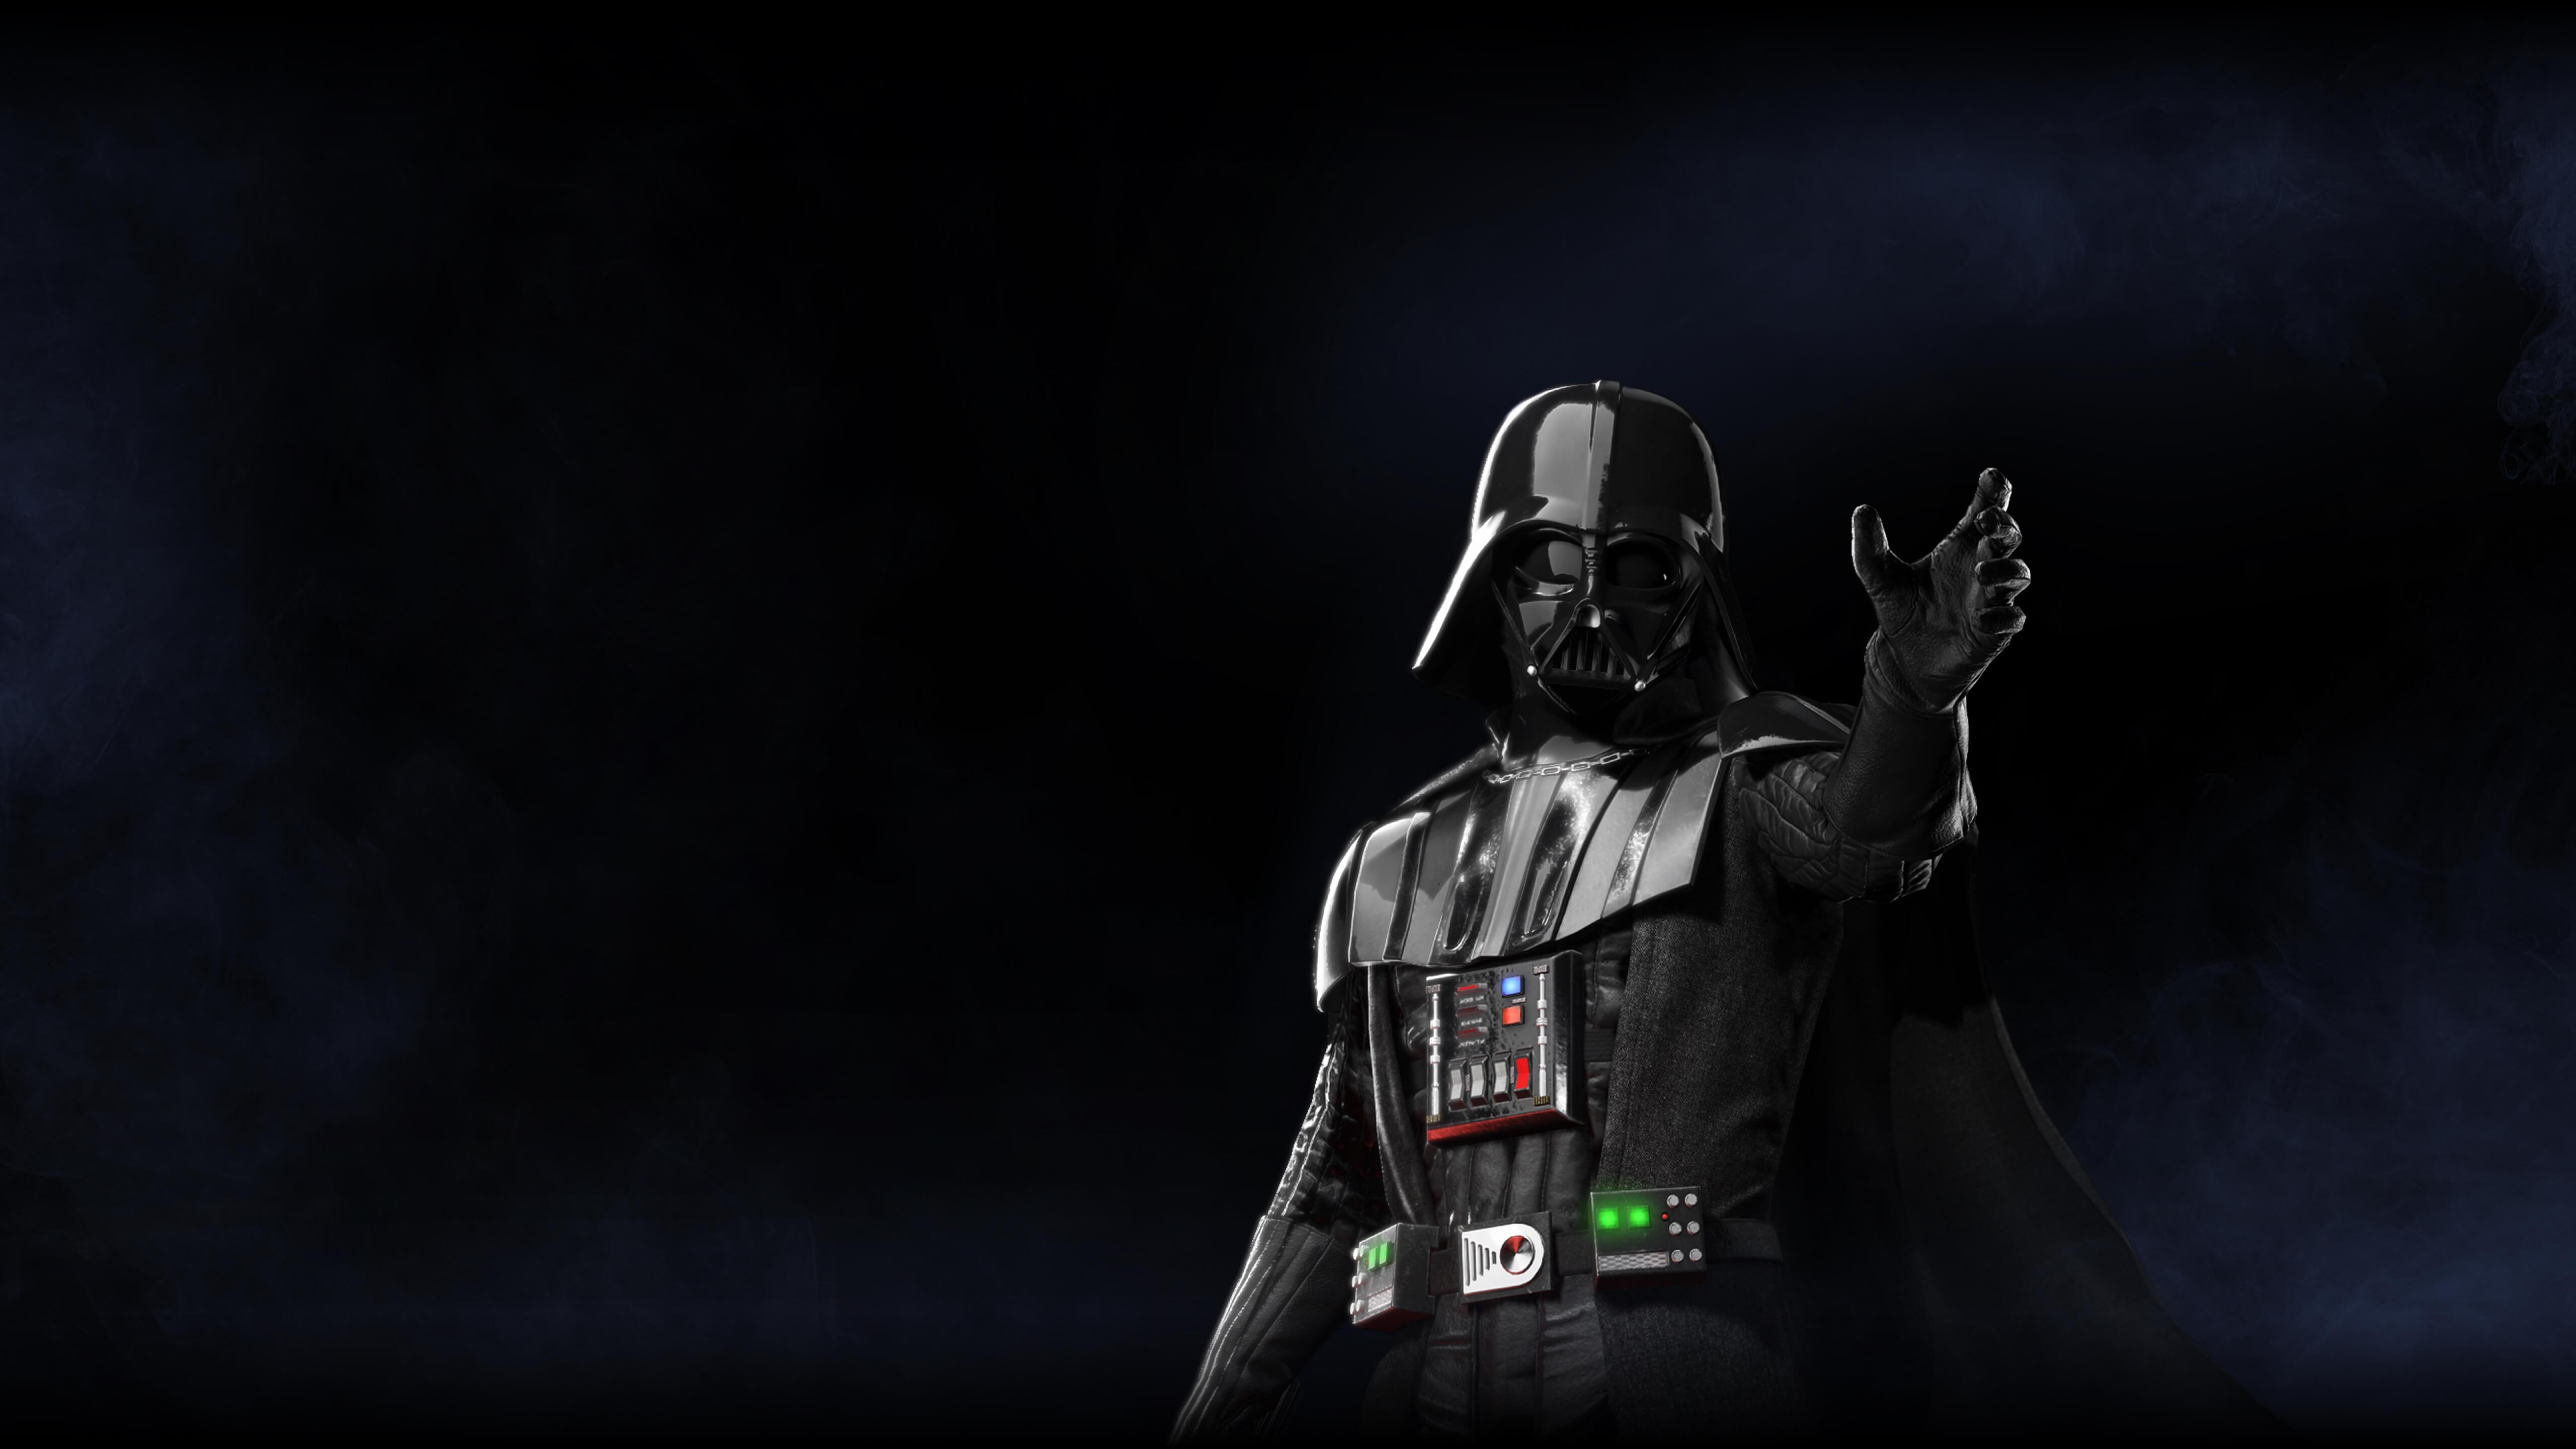 Star Wars Darth Vader Wallpaper Free Star Wars Darth Vader Background